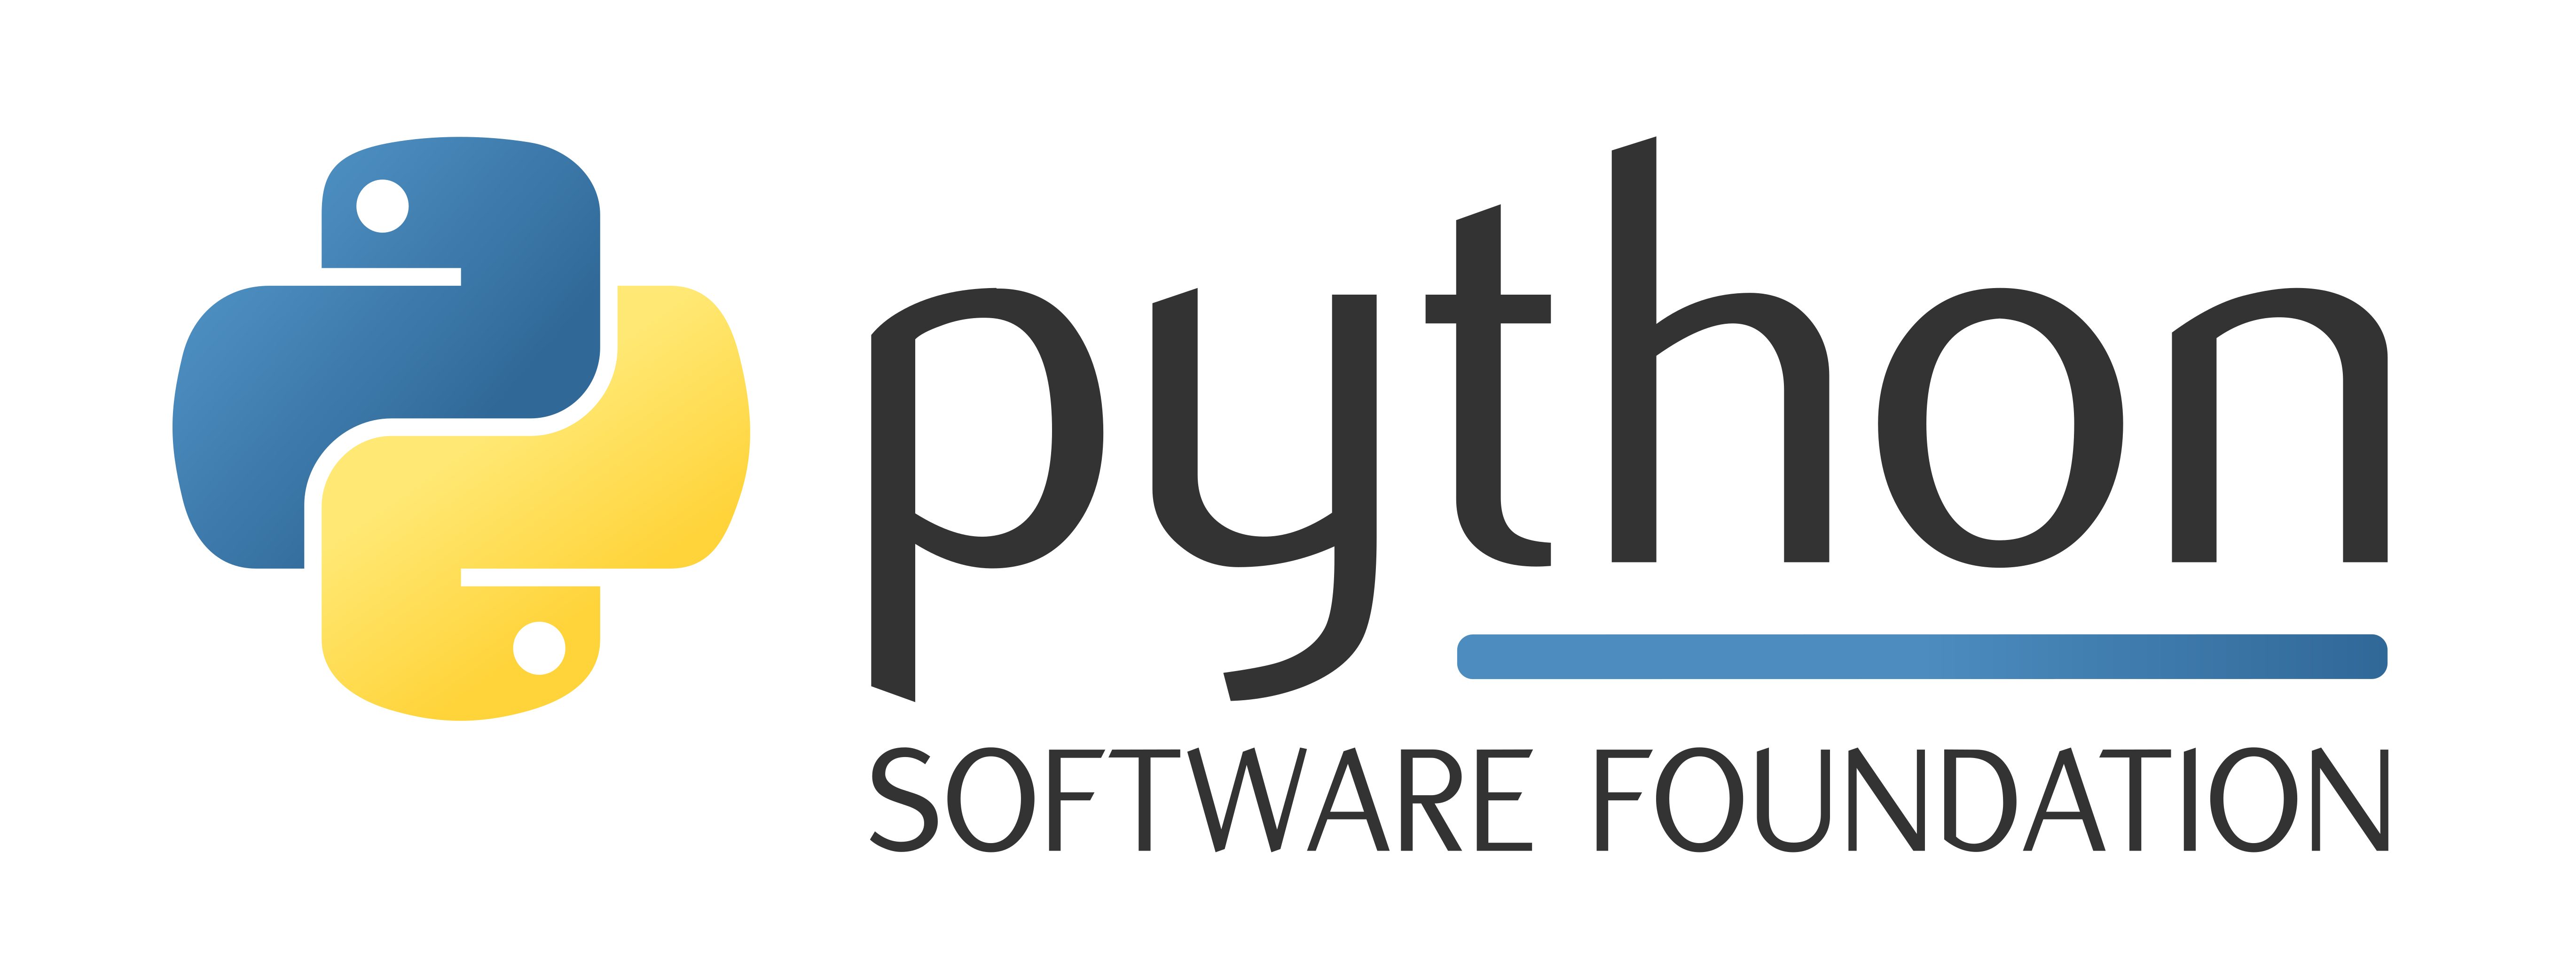 IMGBIN_europython-python-conference-python-software-foundation-software-development-png_wX1ur1zG.png